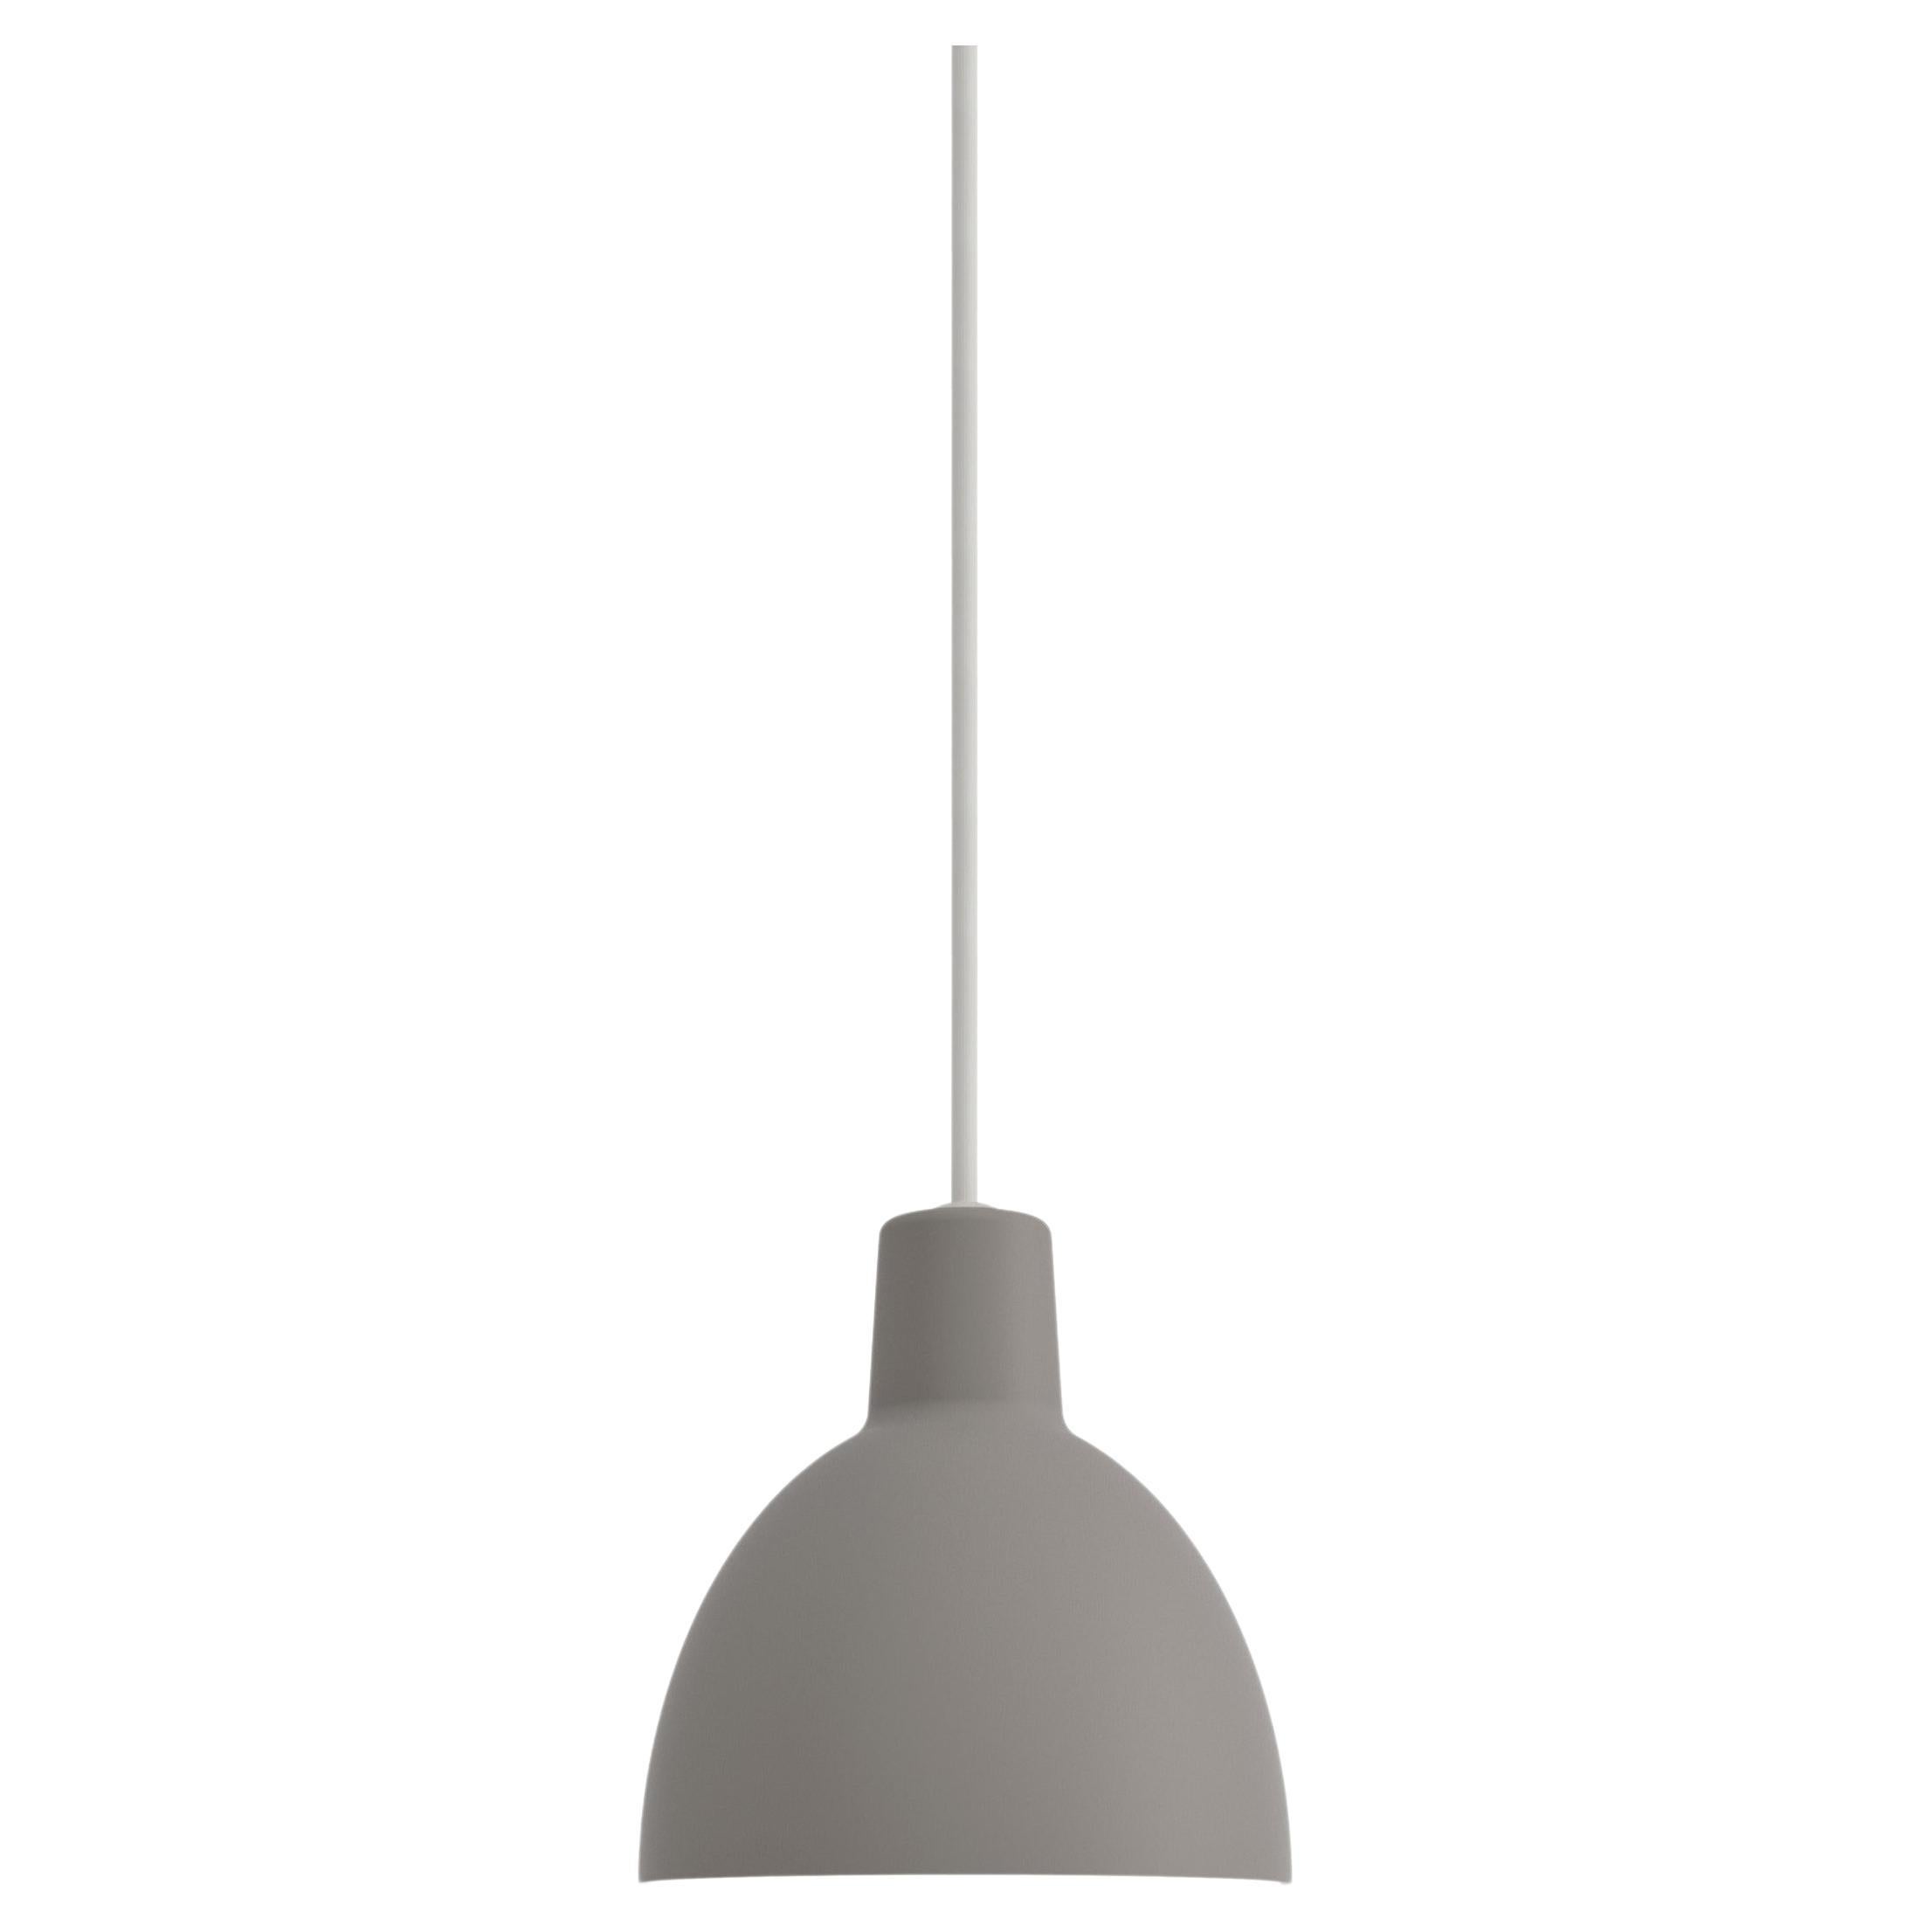 Toldbod 120 Pendant Lamp in Gray by Louis Poulsen For Sale